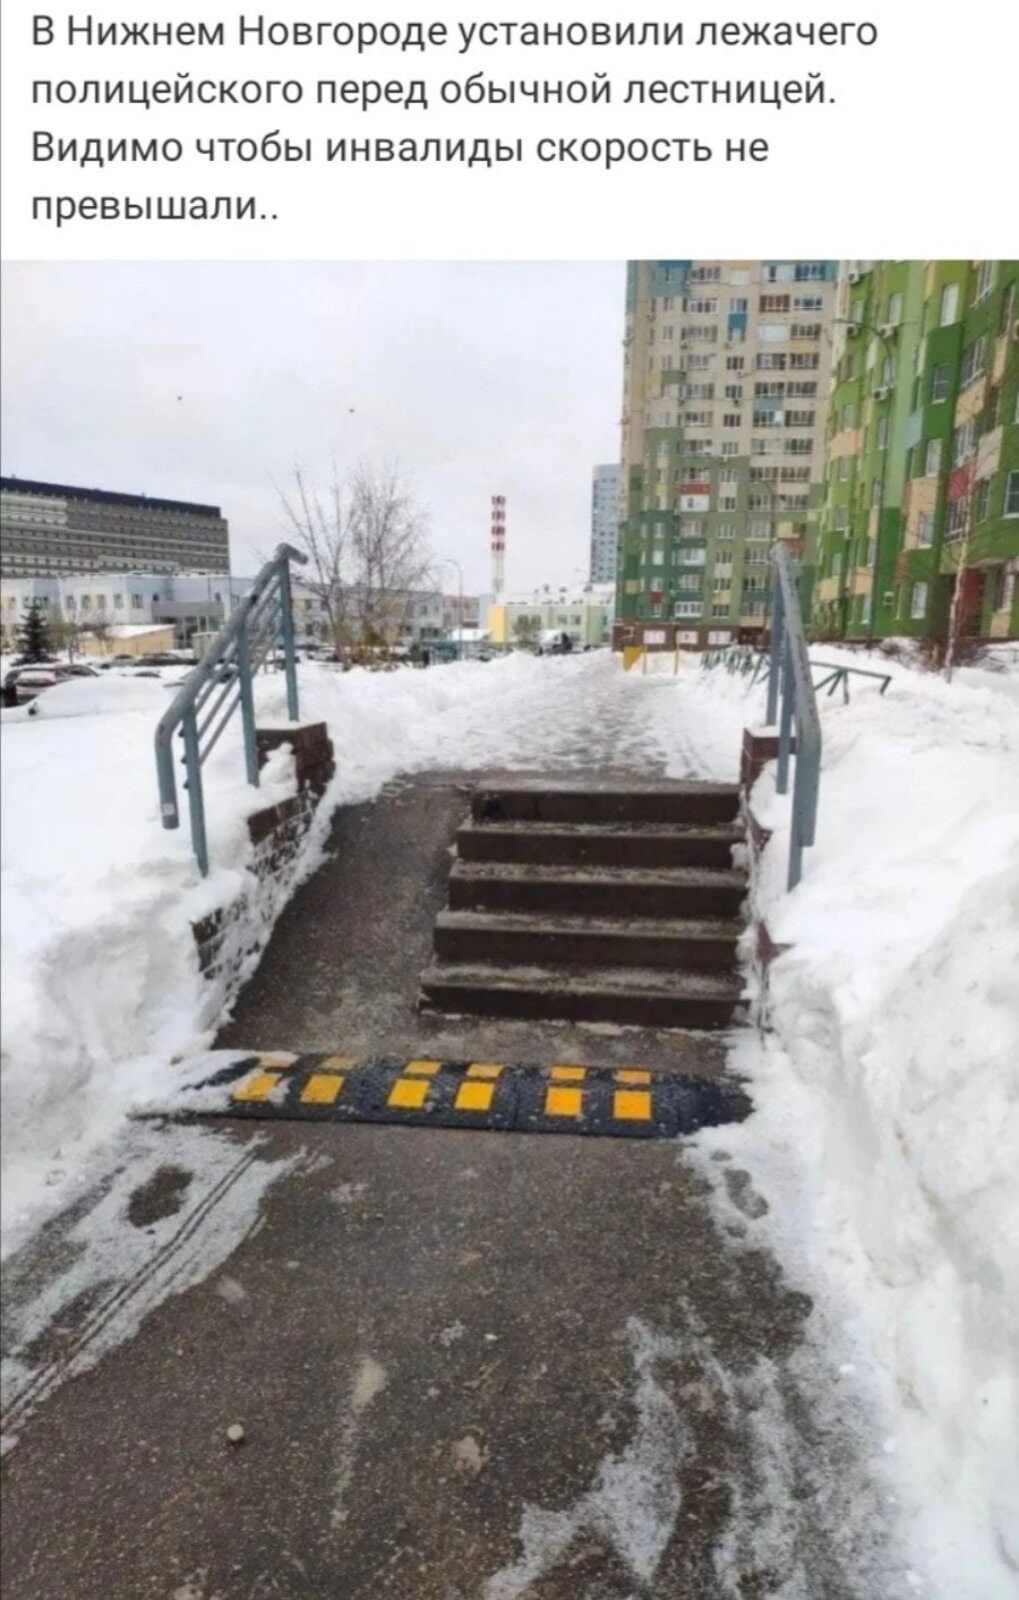 В Нижнем Новгороде установили лежачего полицейского перед обычной лестницей Видимо чтобы инвалиды скорость не превышали